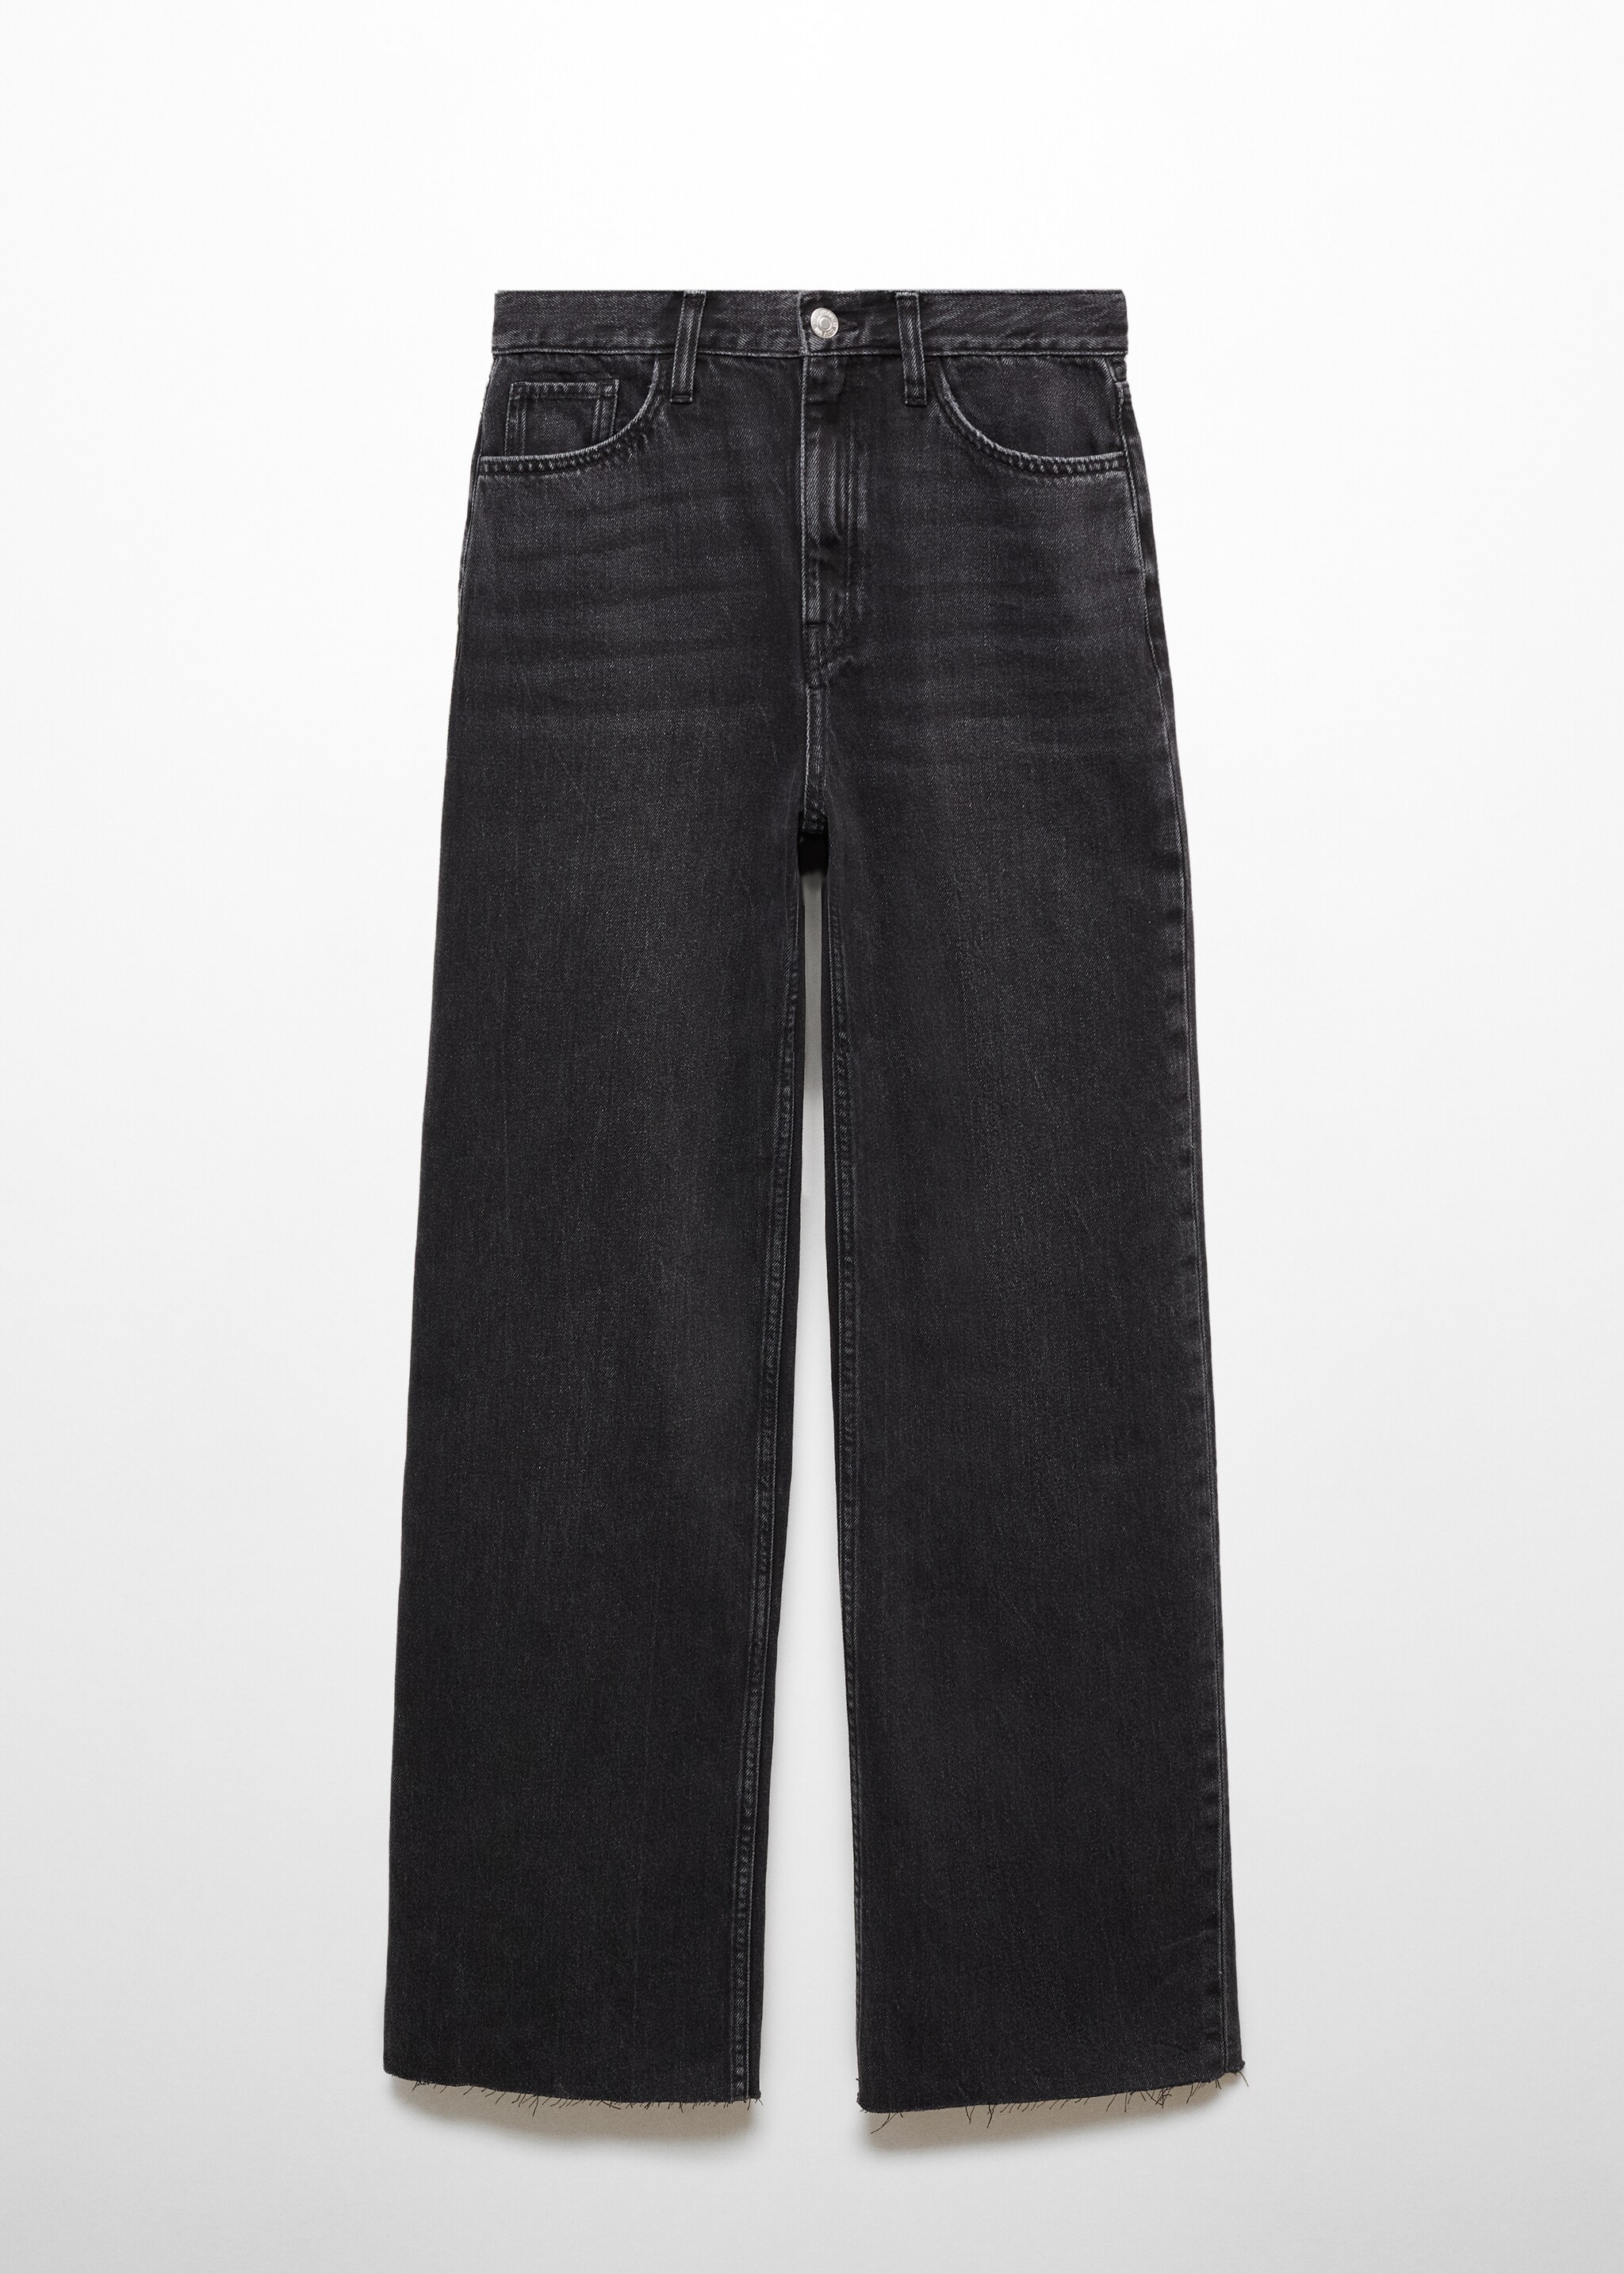 Jeans wideleg vita alta - Articolo senza modello